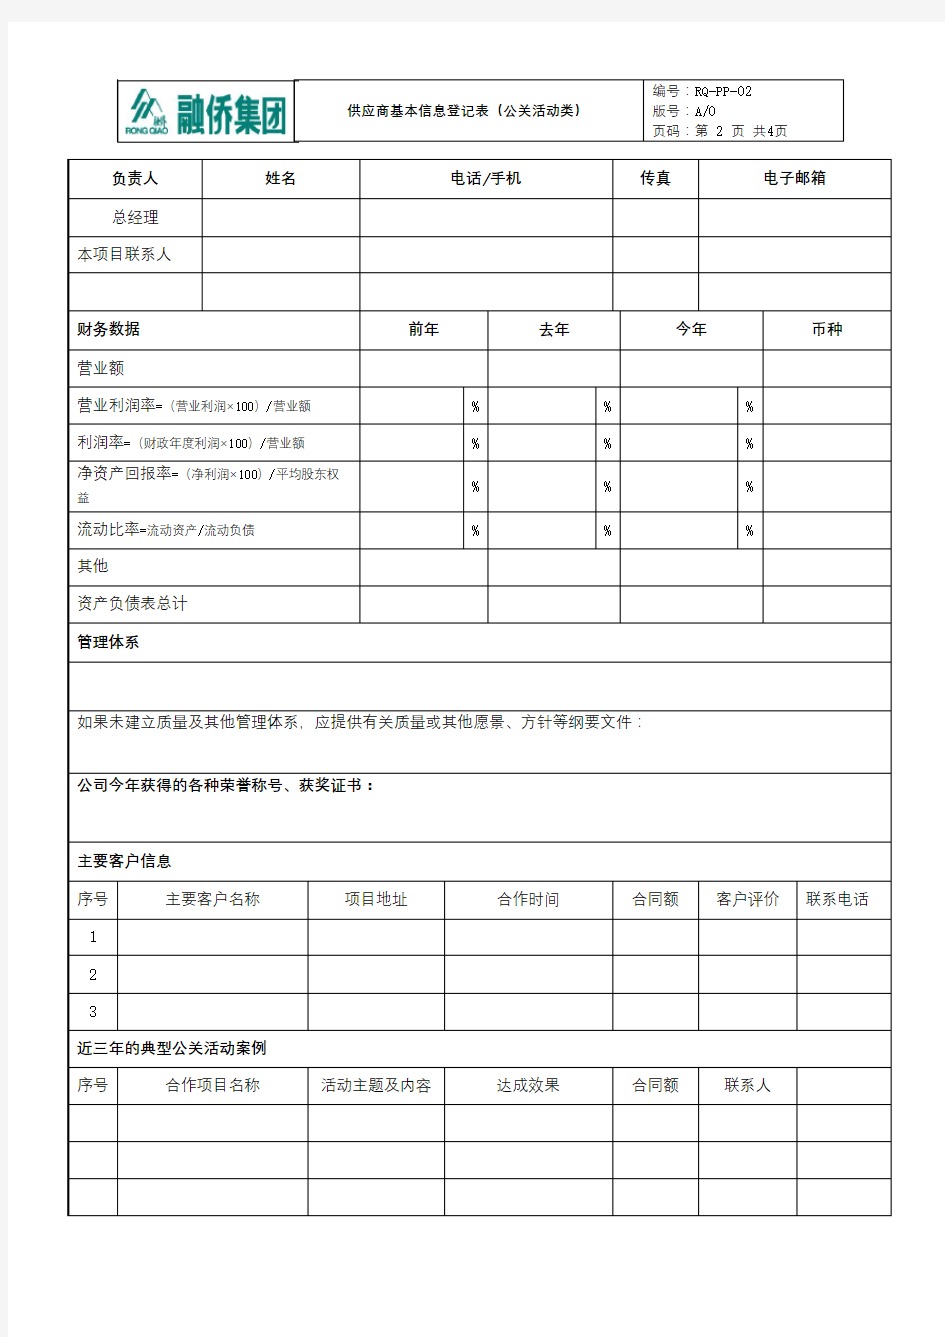 供应商基本信息登记表【模板】